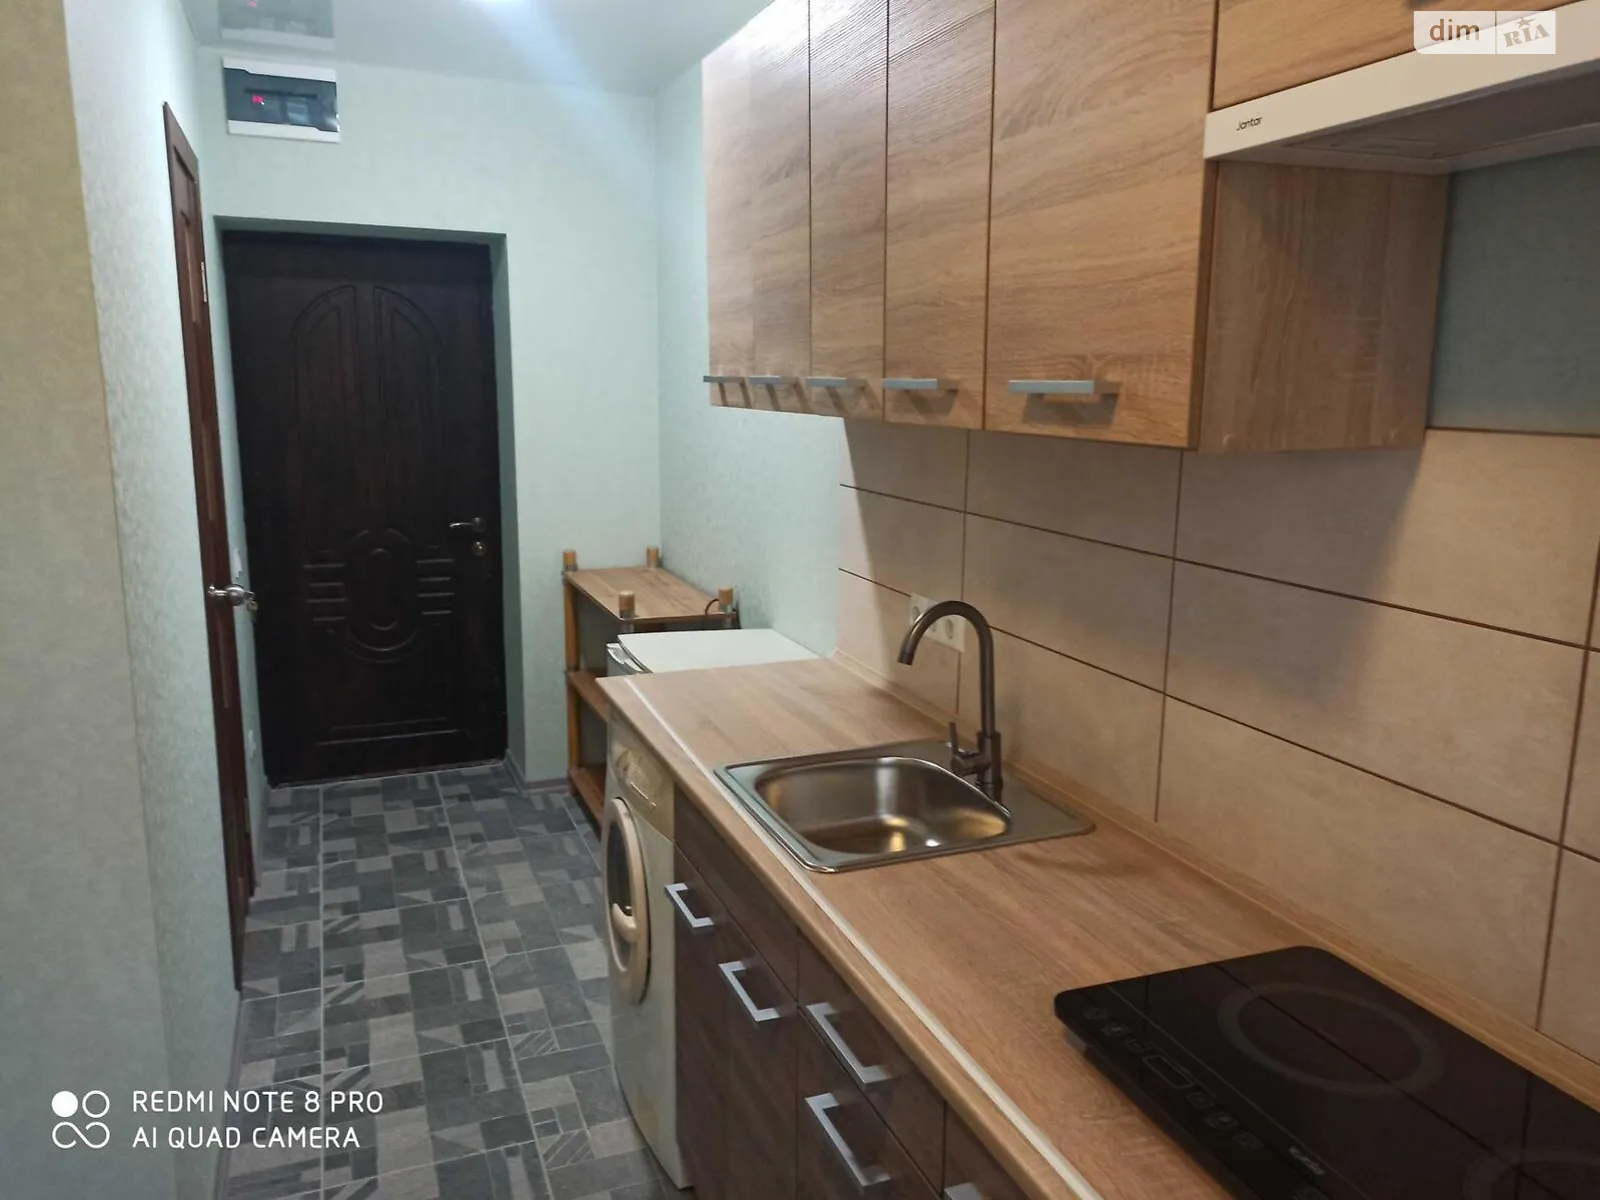 Продается комната 12 кв. м в Харькове, цена: 6500 $ - фото 1